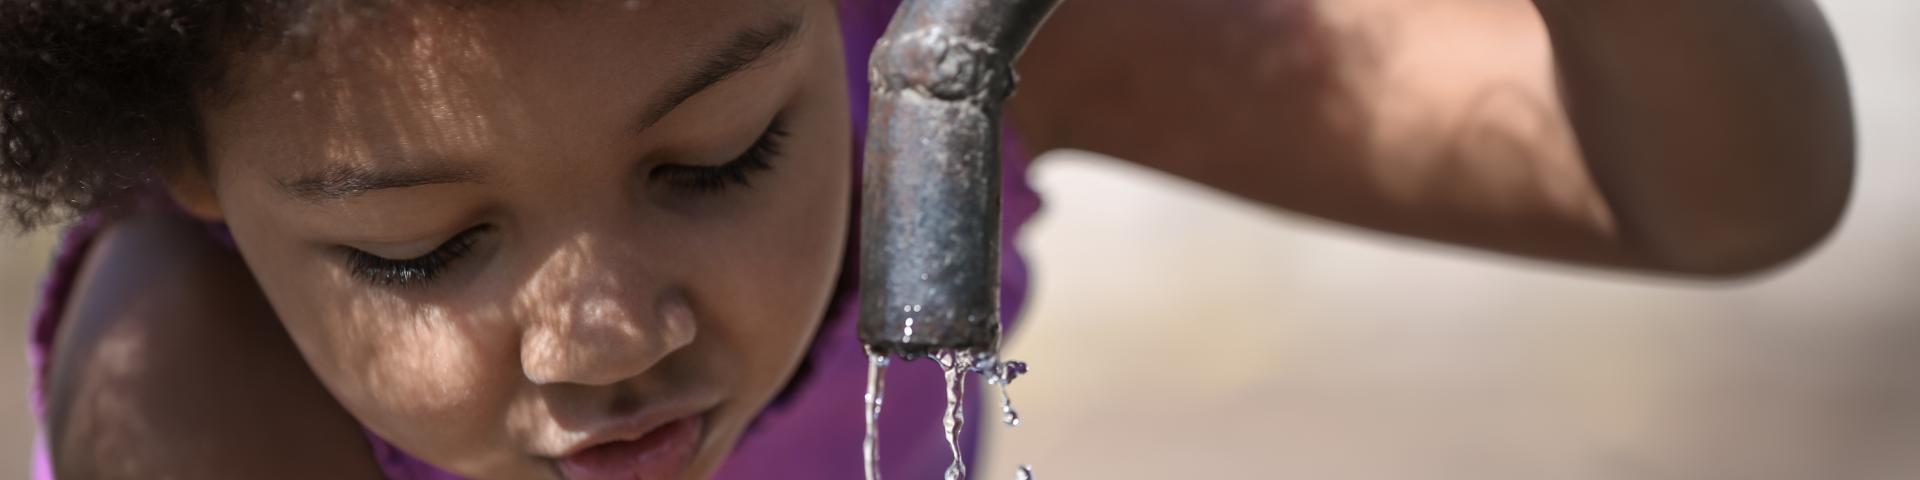 kind drinkt water aan kraan